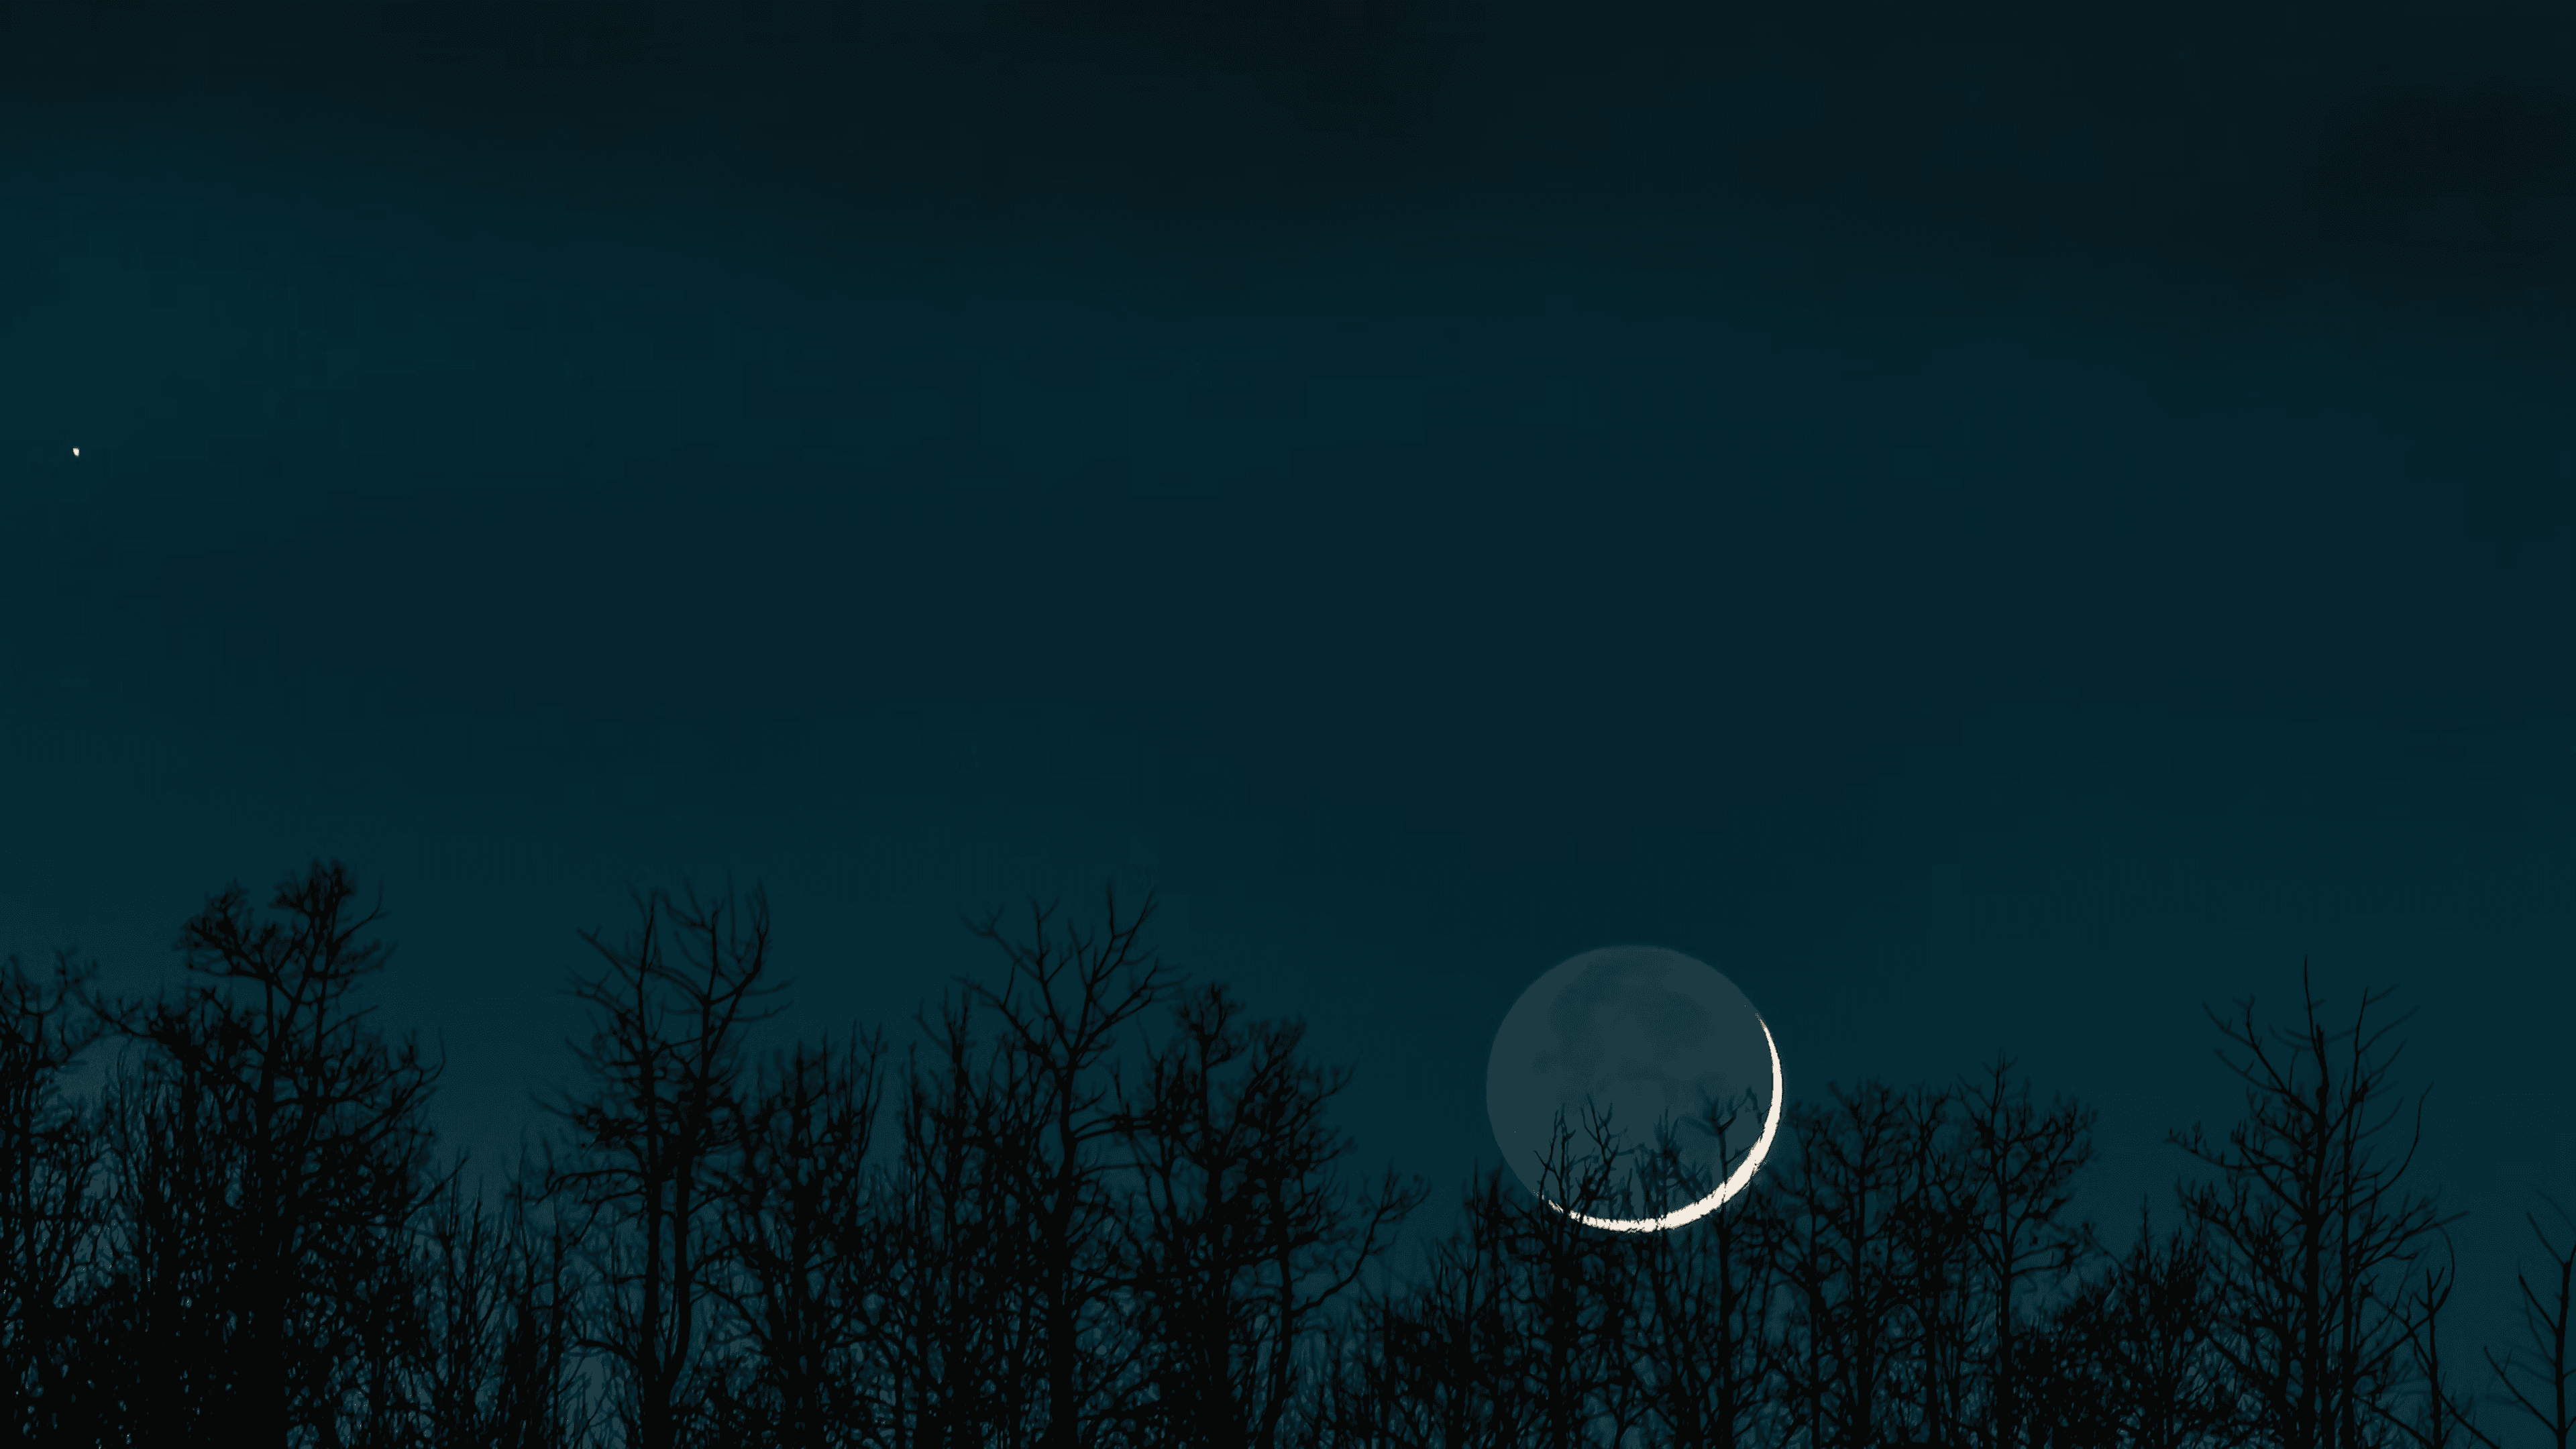 Wald Silhouette in einer dunklen Neumond Nacht